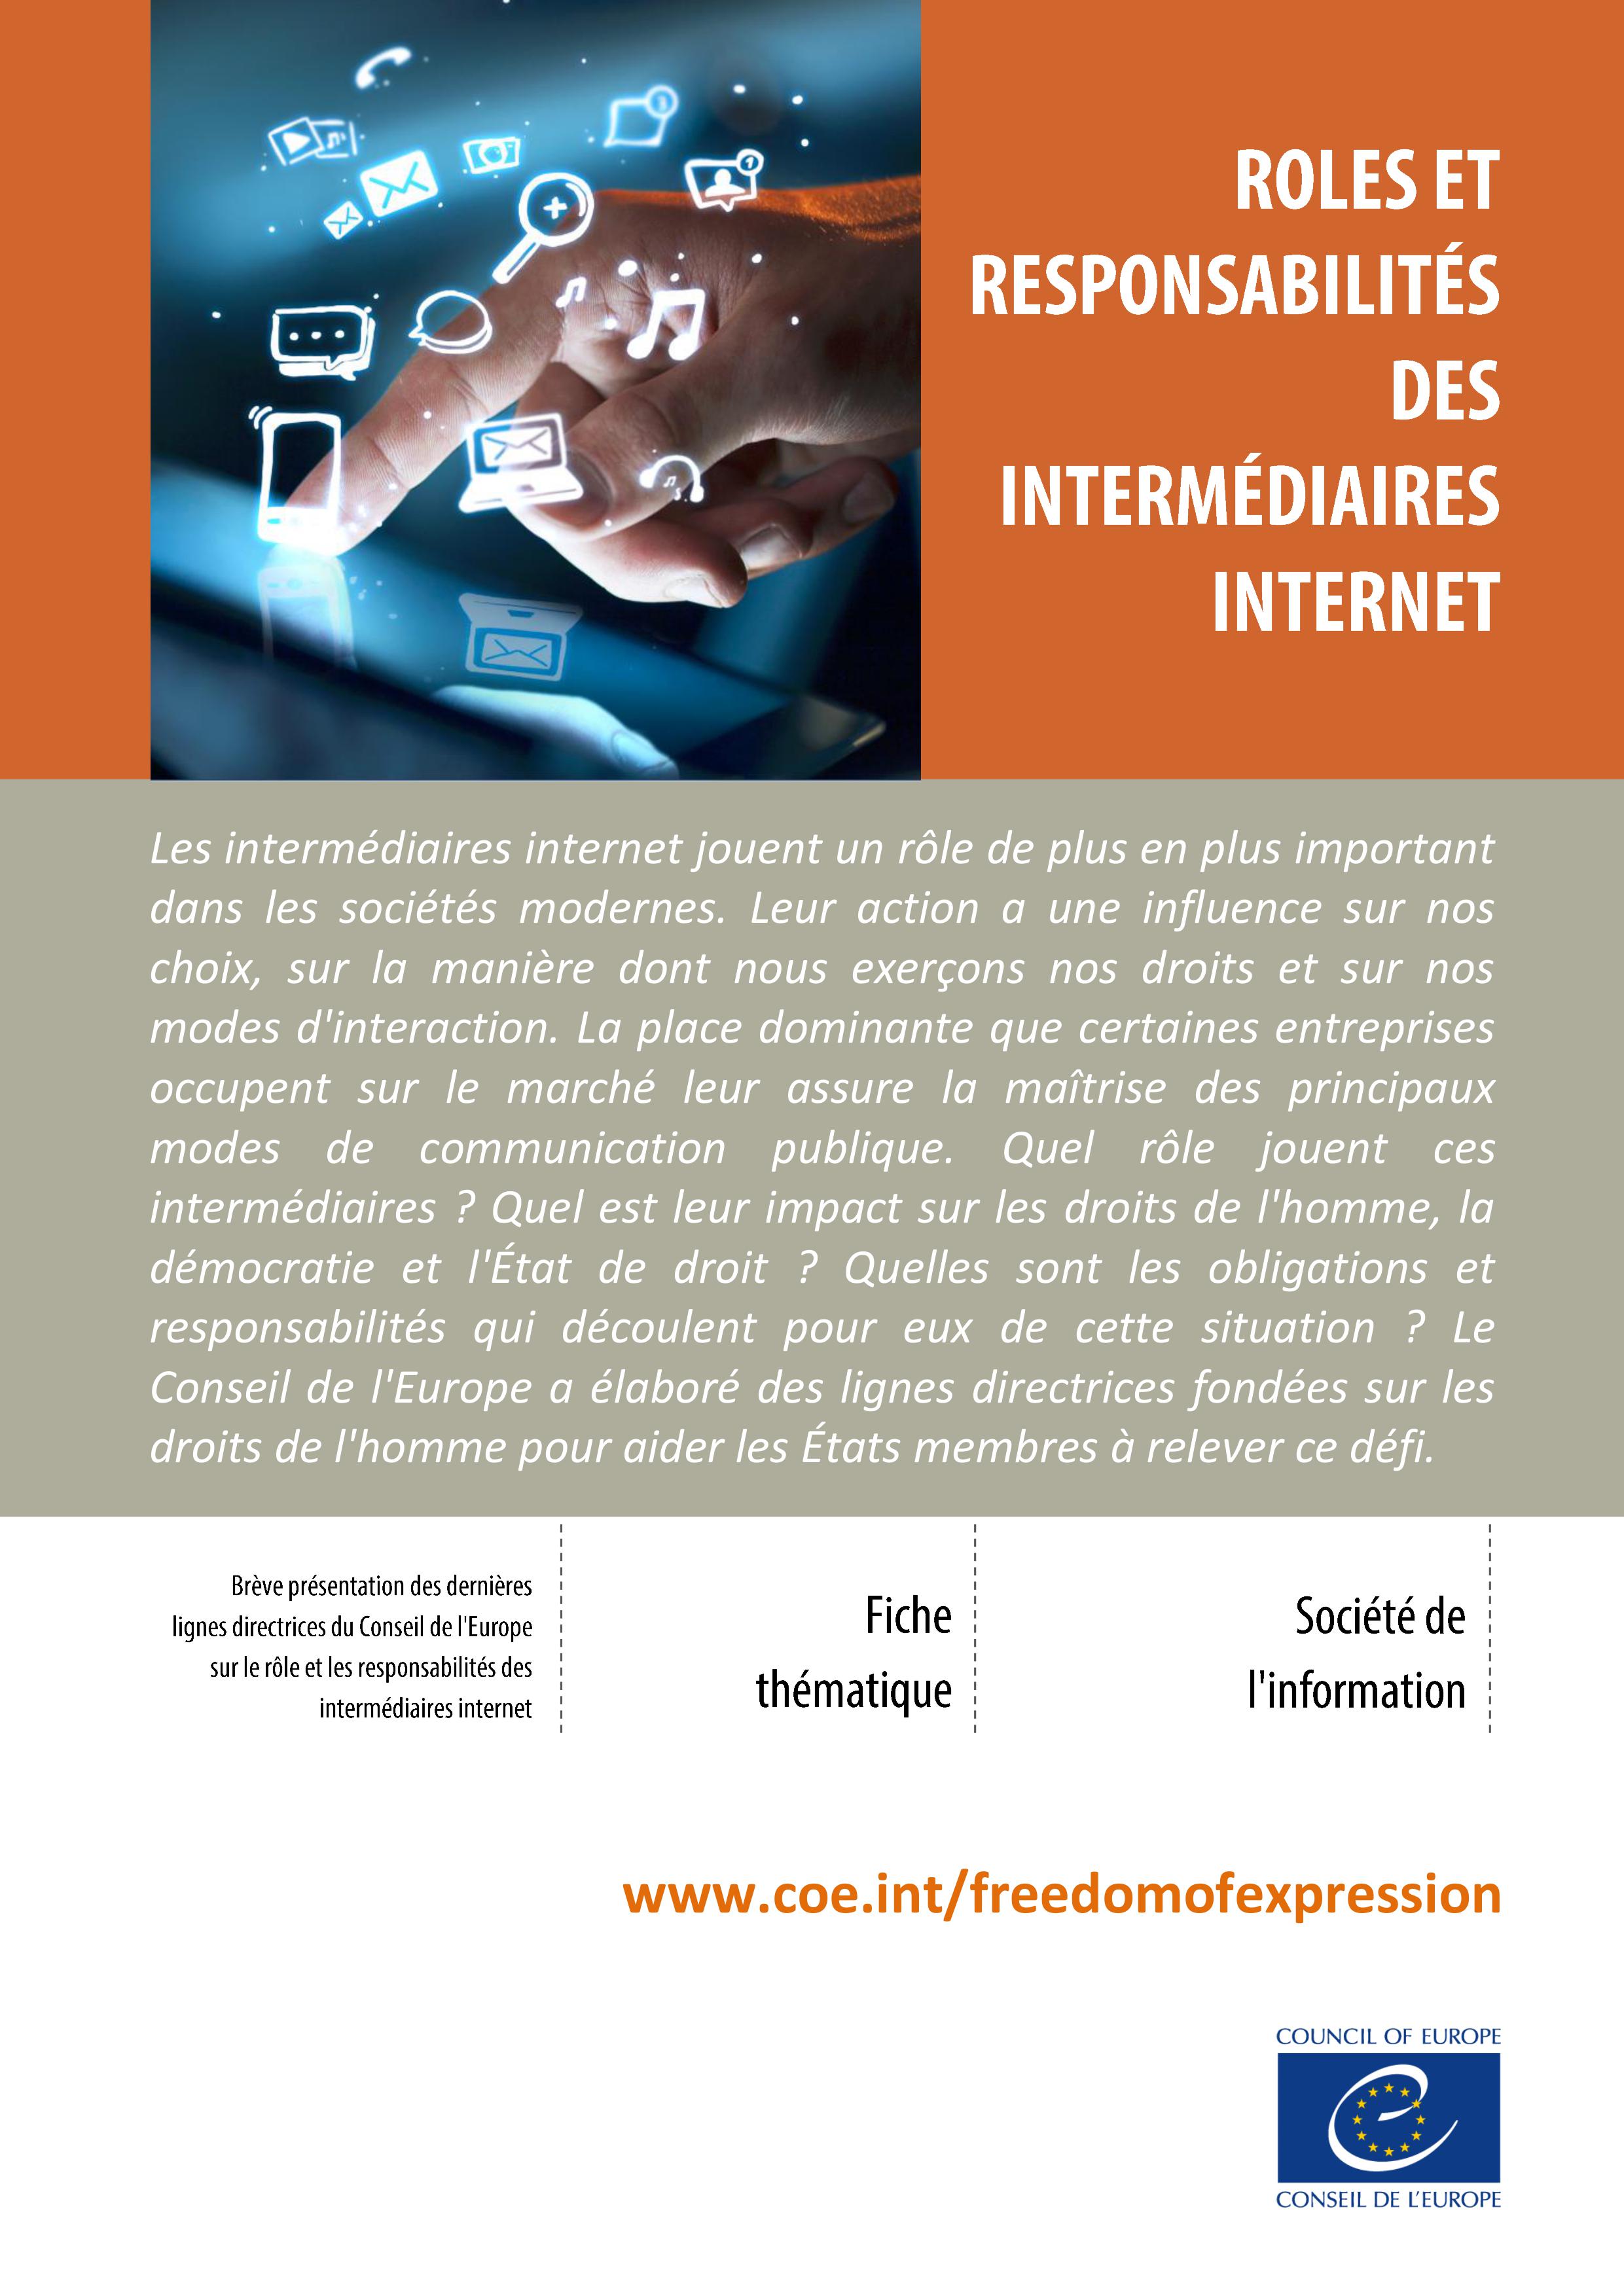 Roles et responsabilités des intermédiaires internet